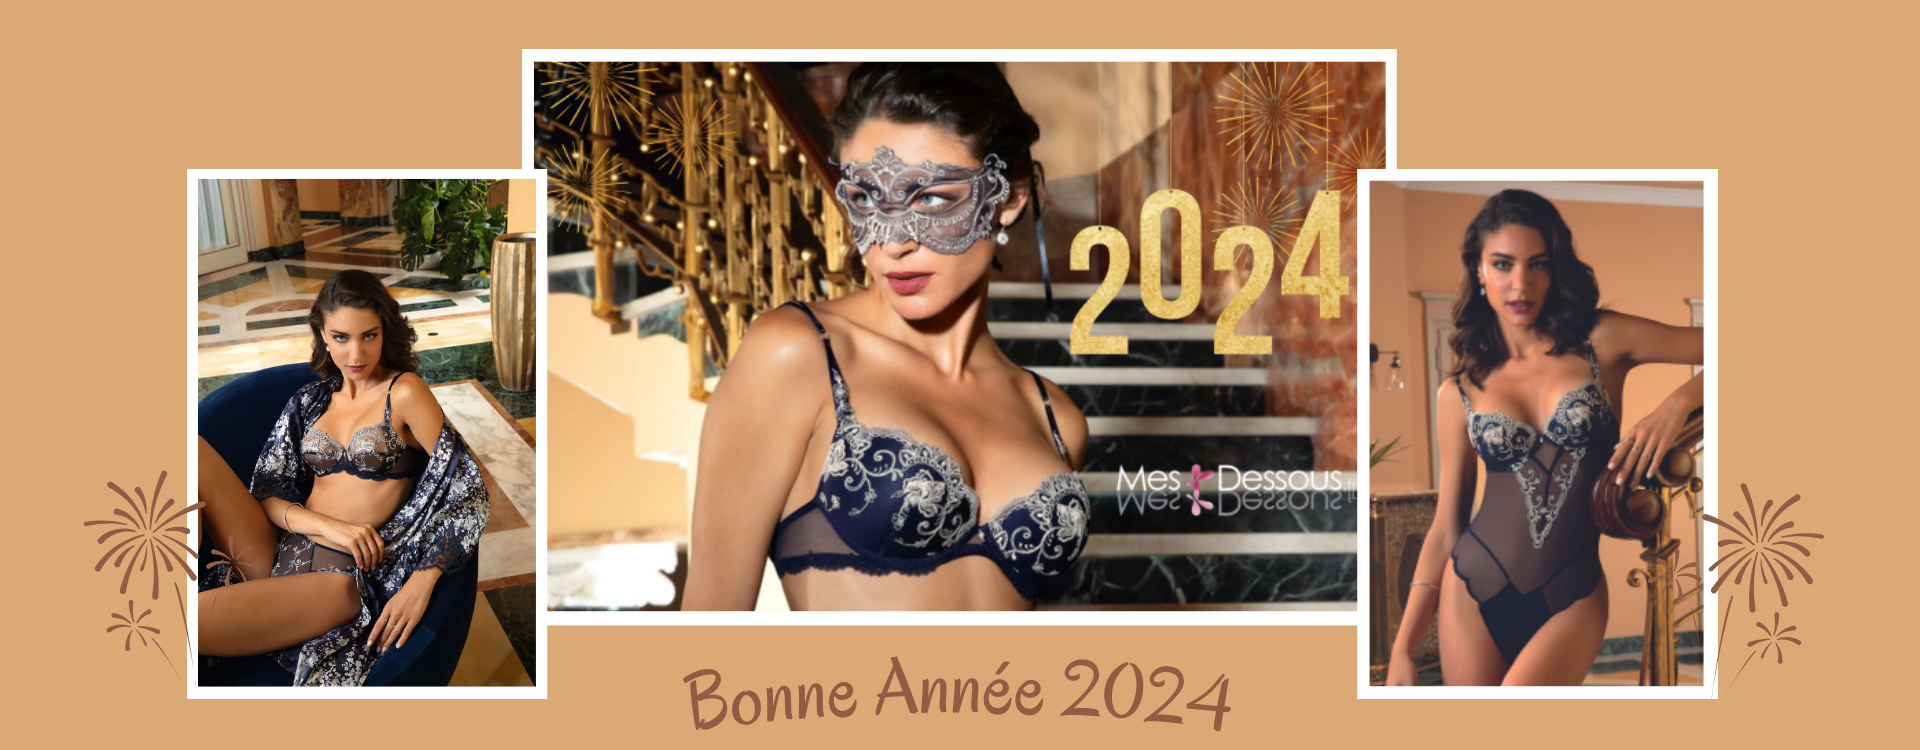 Bonne Année 2024 : Une Nouvelle Année Scintillante dans l'Univers Intime de la Lingerie